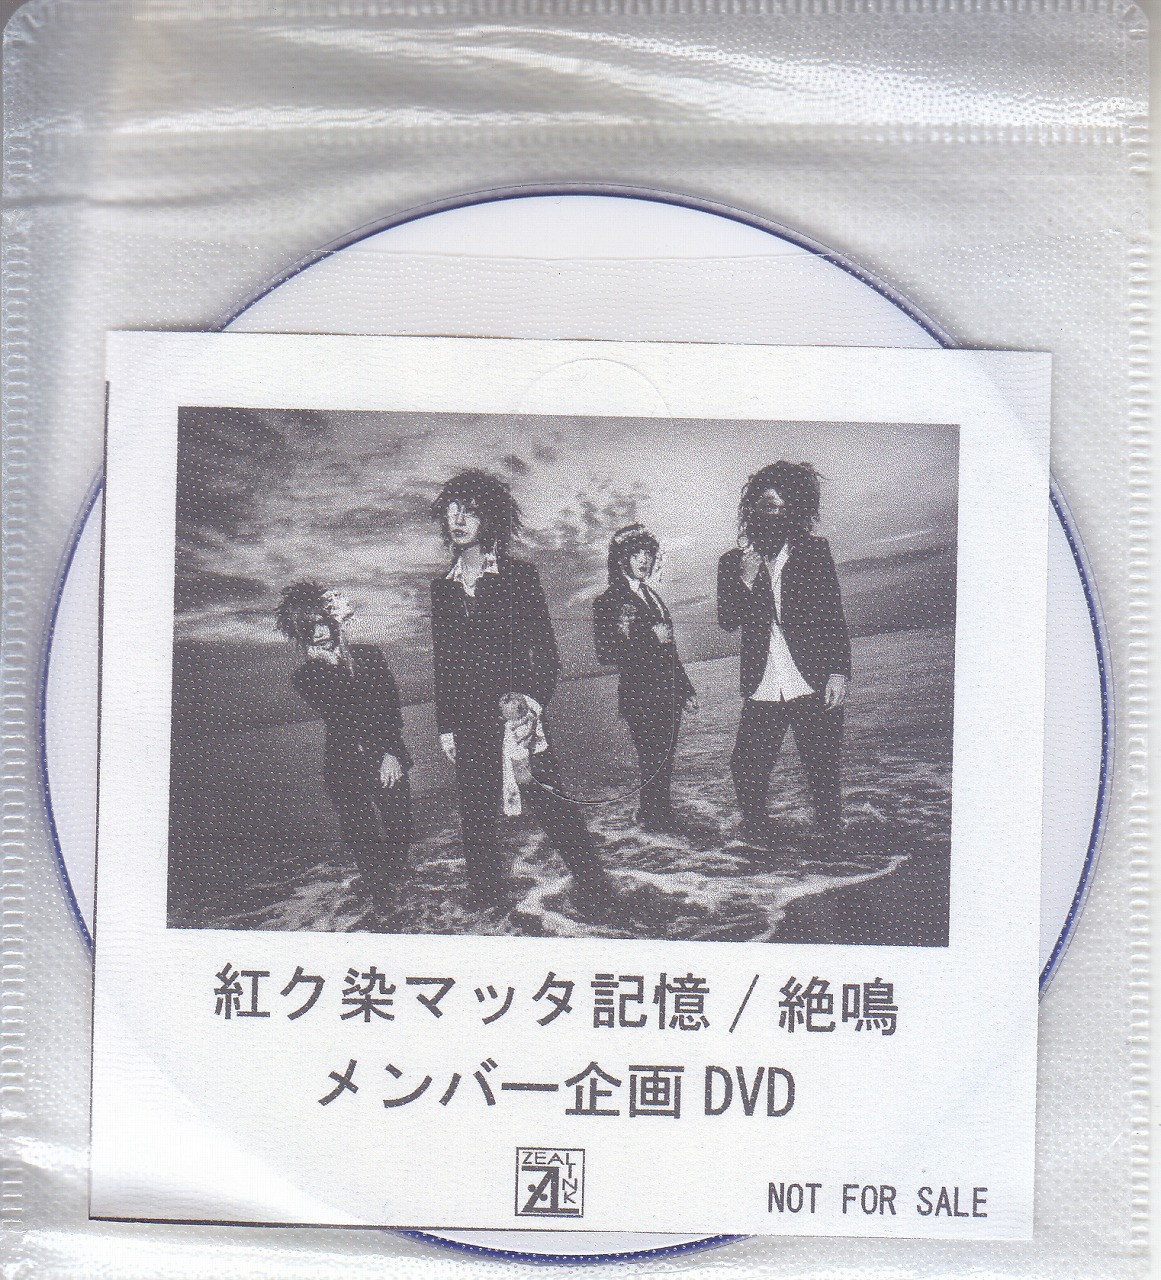 アカクソマッタキオク の DVD 【ZEAL LINK】絶鳴 メンバー企画DVD